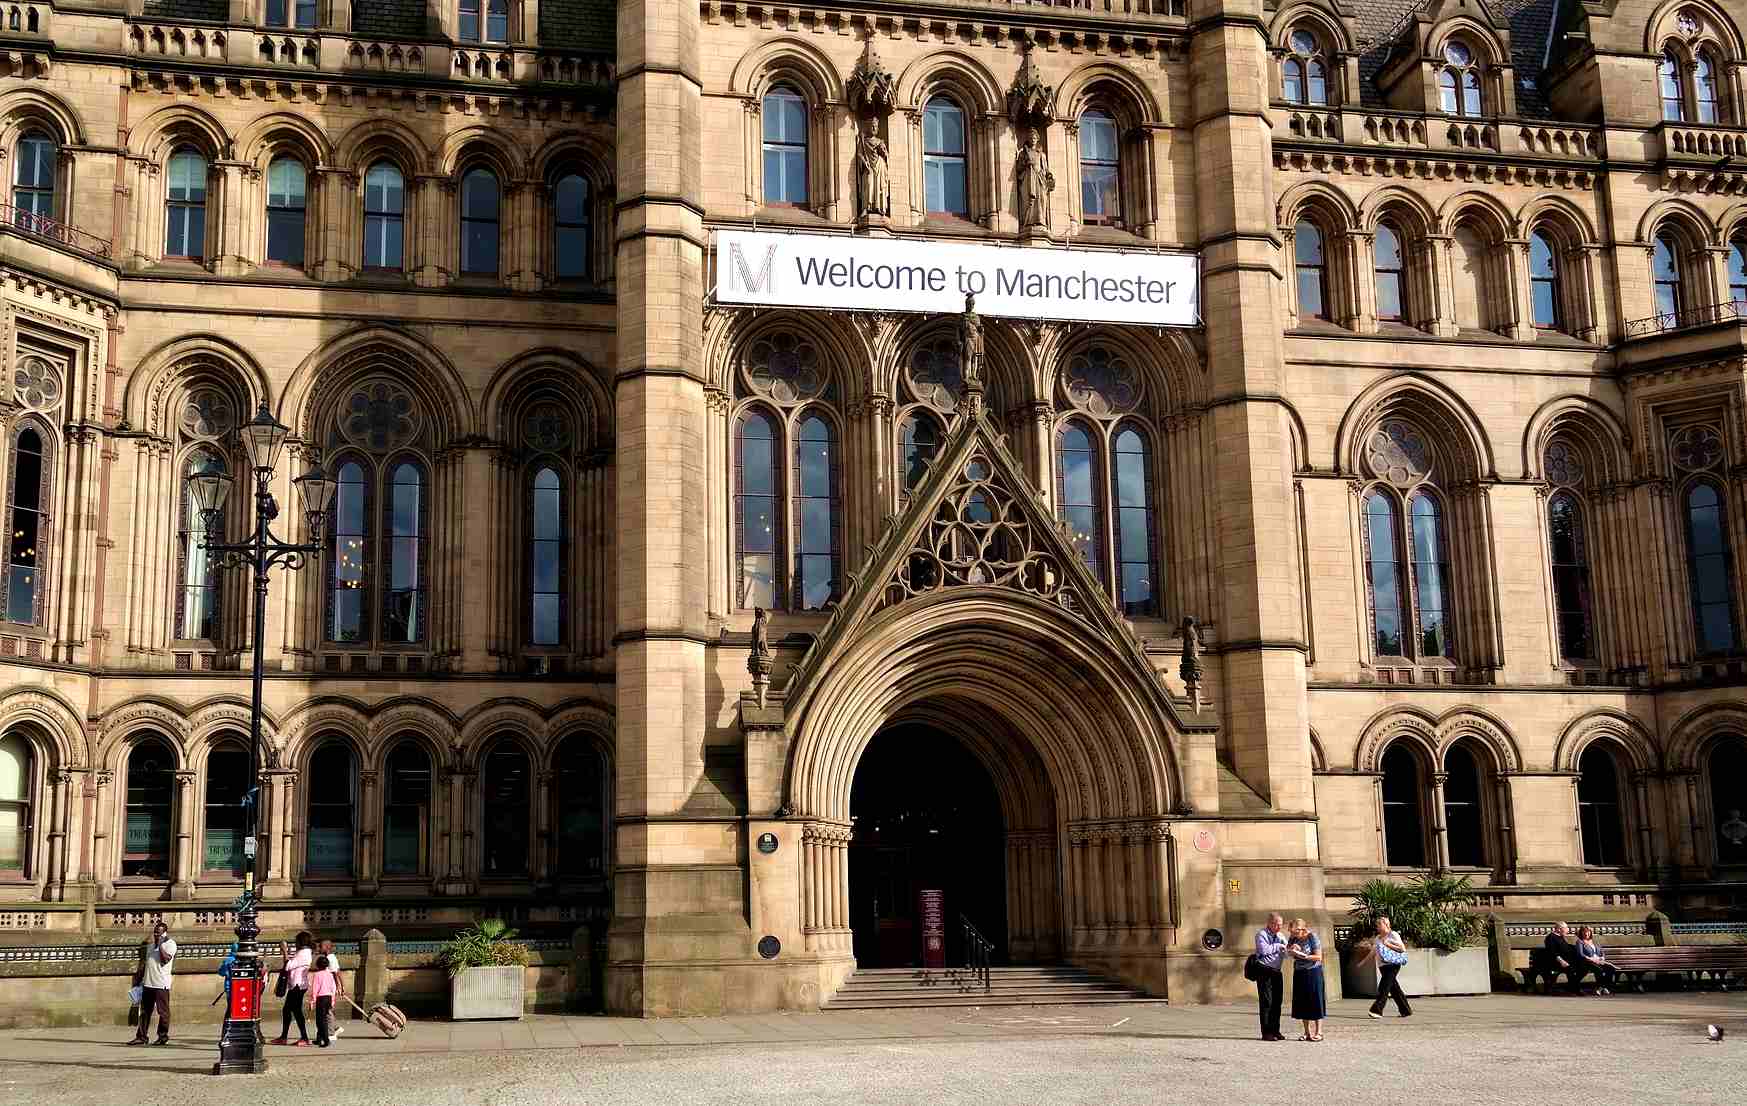 Manchester, İngiltere’de 1 sterlinlik turizm vergisi alan ilk şehir oldu